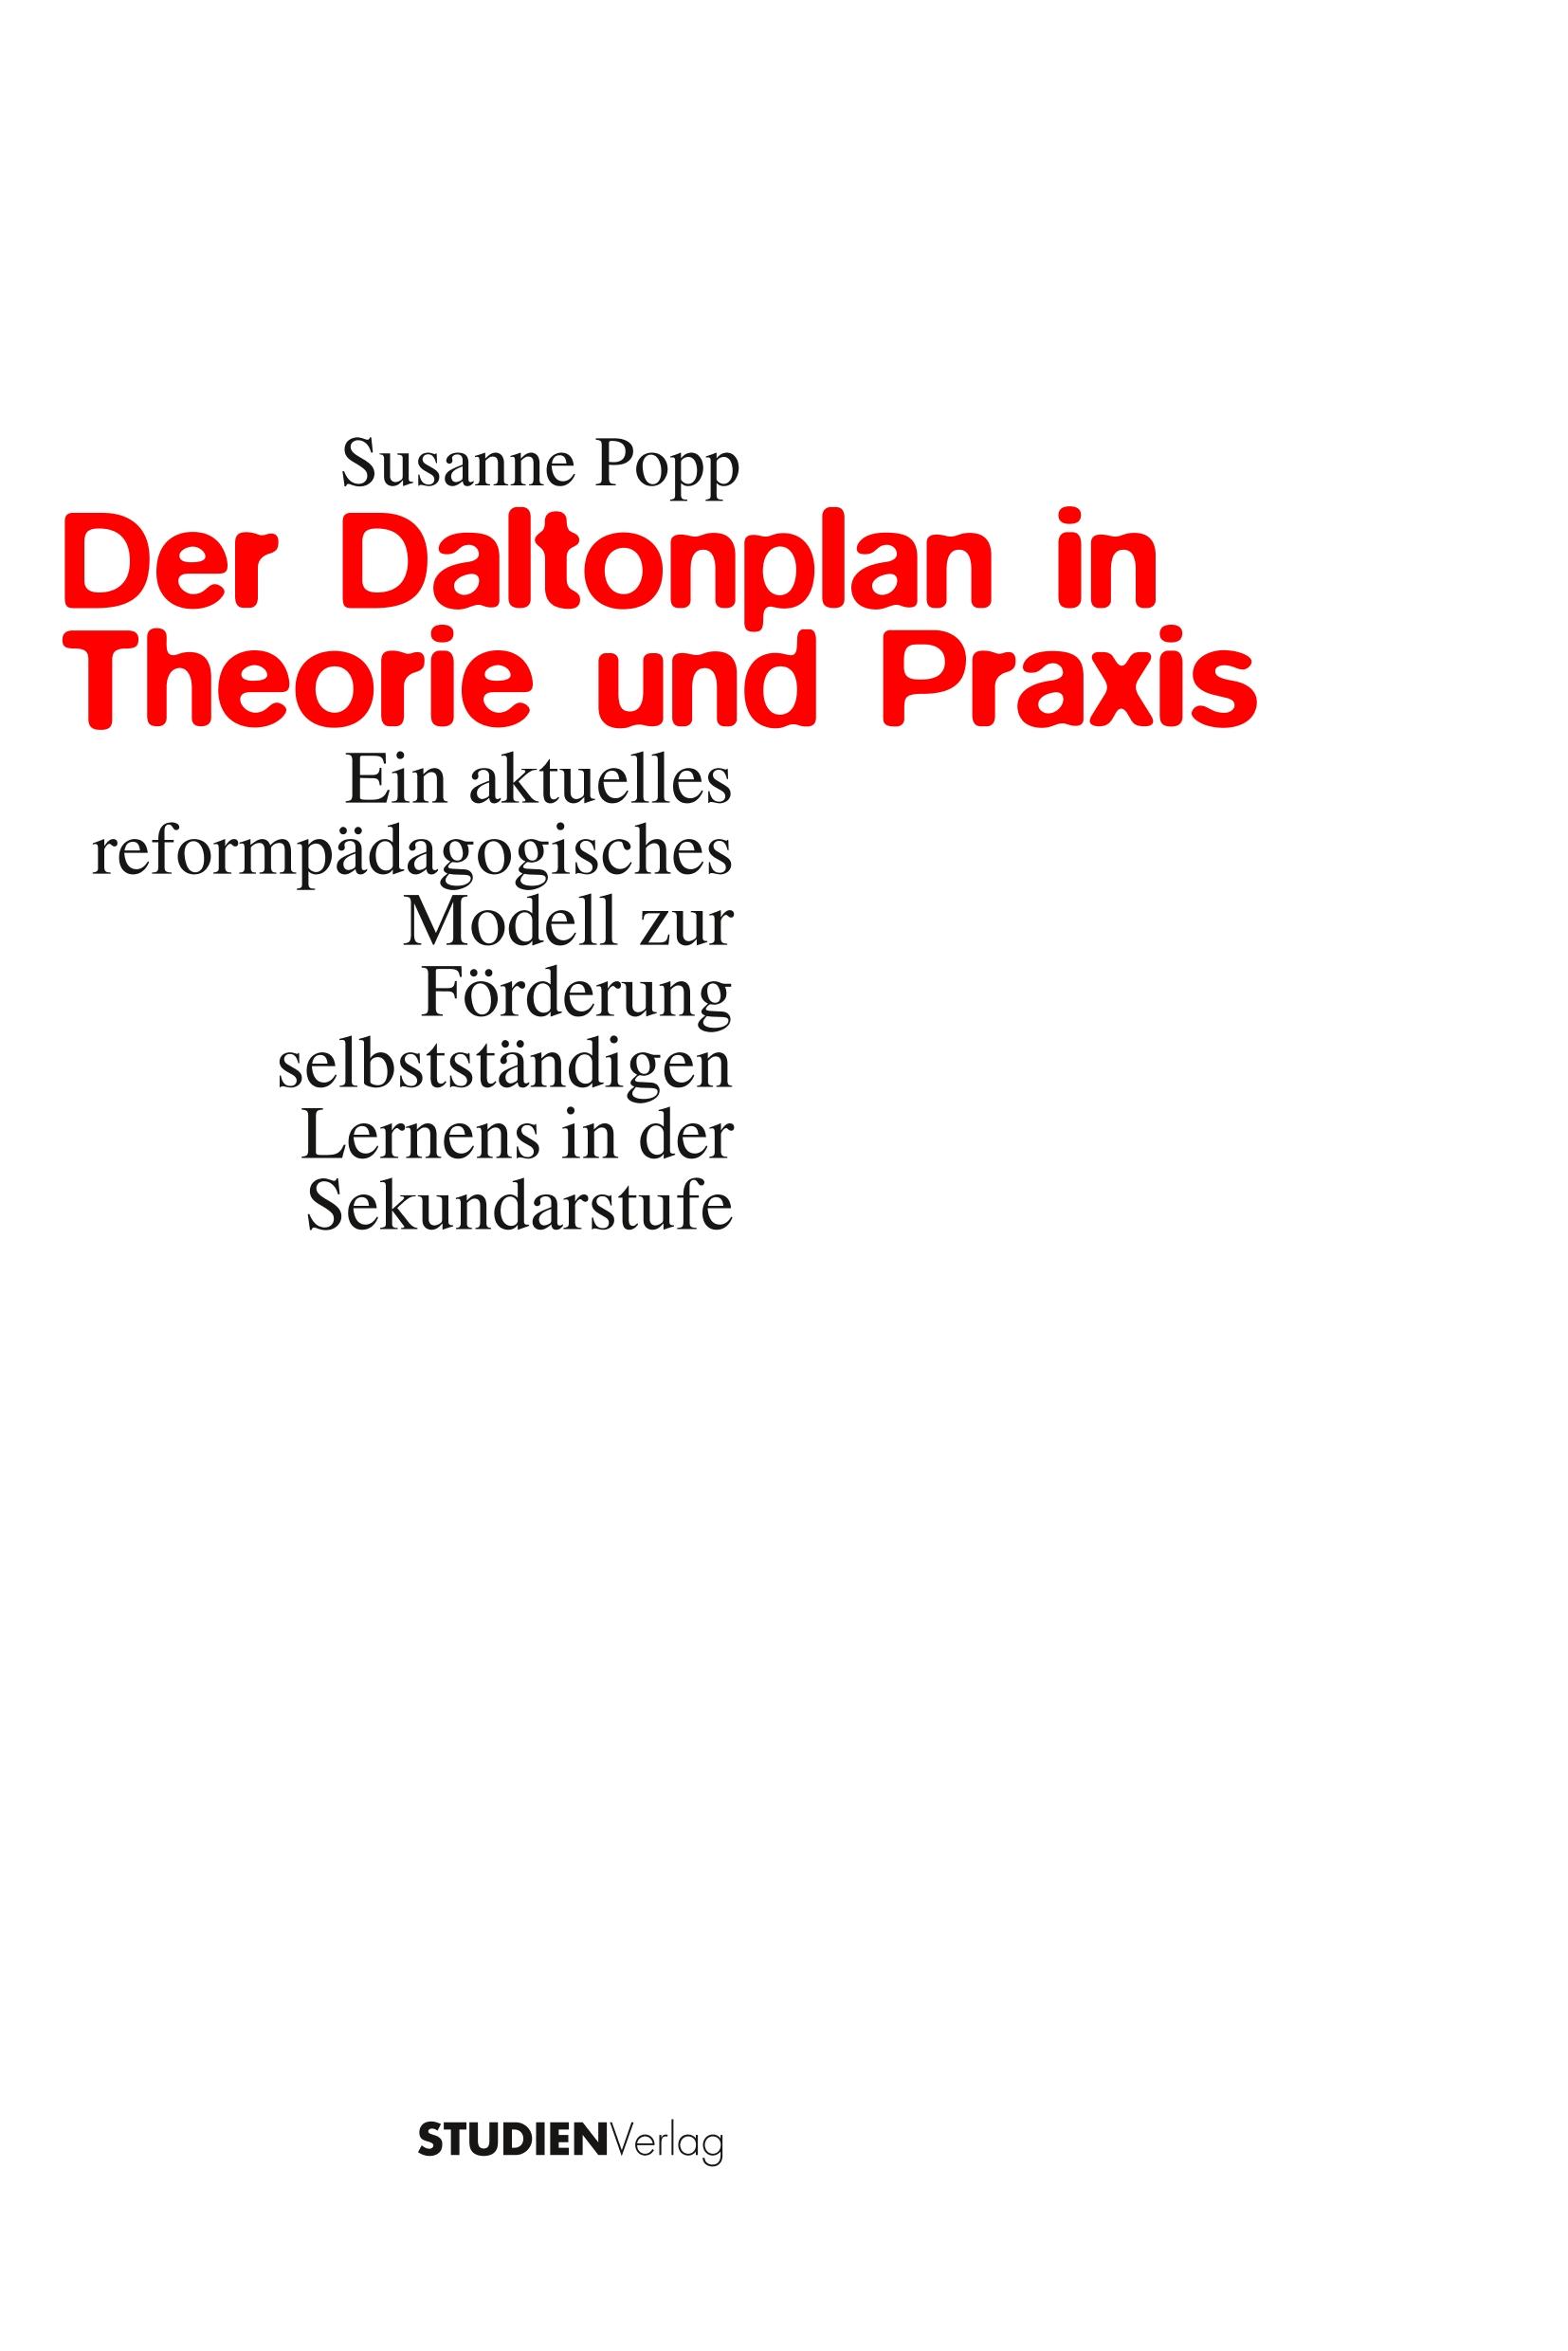 Der Daltonplan in Theorie und Praxis - Popp, Susanne